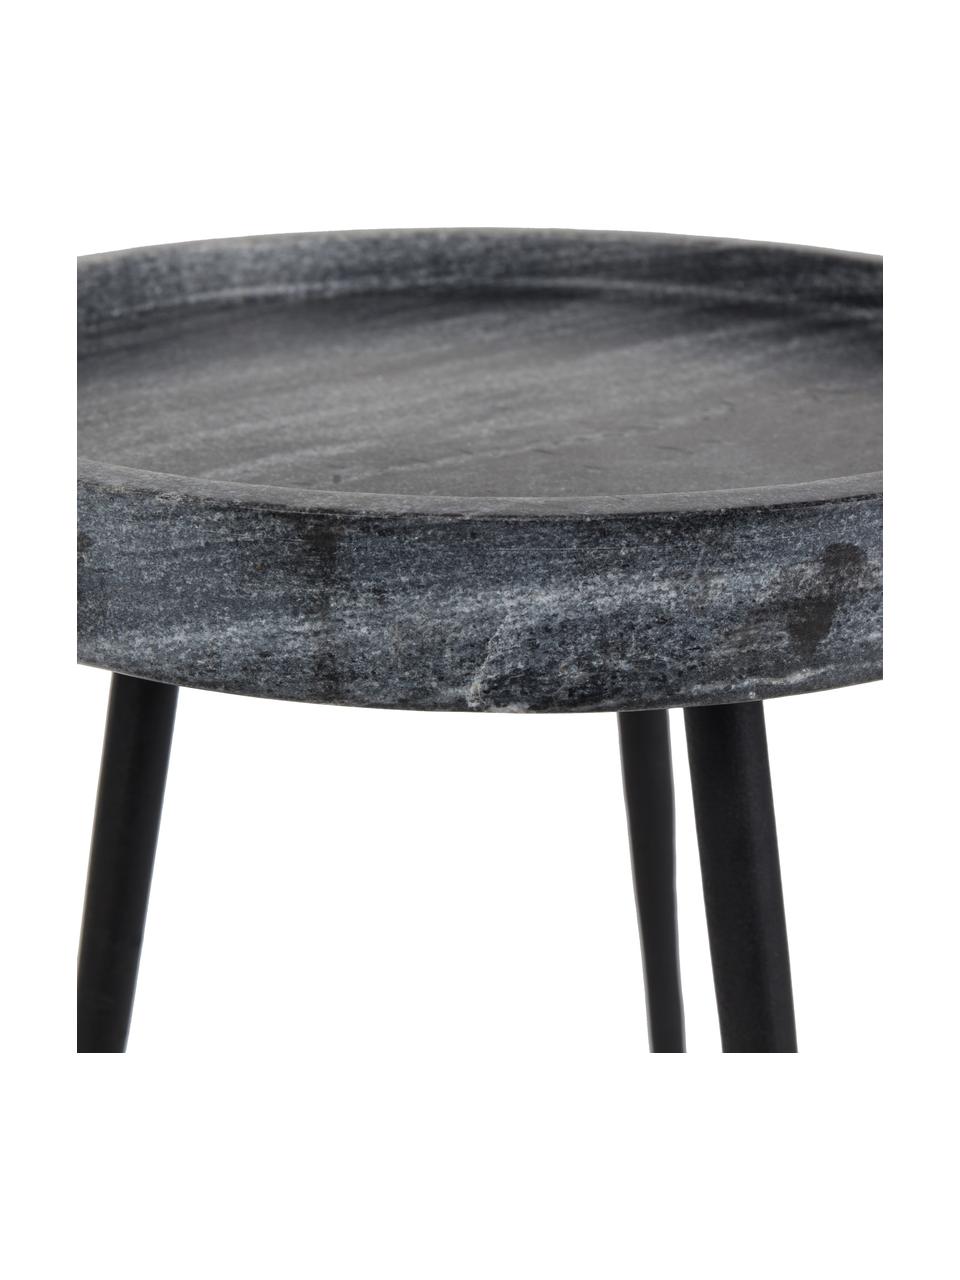 Runder Marmor-Beistelltisch Karrara, Tischplatte: Marmor, Beine: Metall, pulverbeschichtet, Grau, Schwarz, Ø 33 x H 45 cm